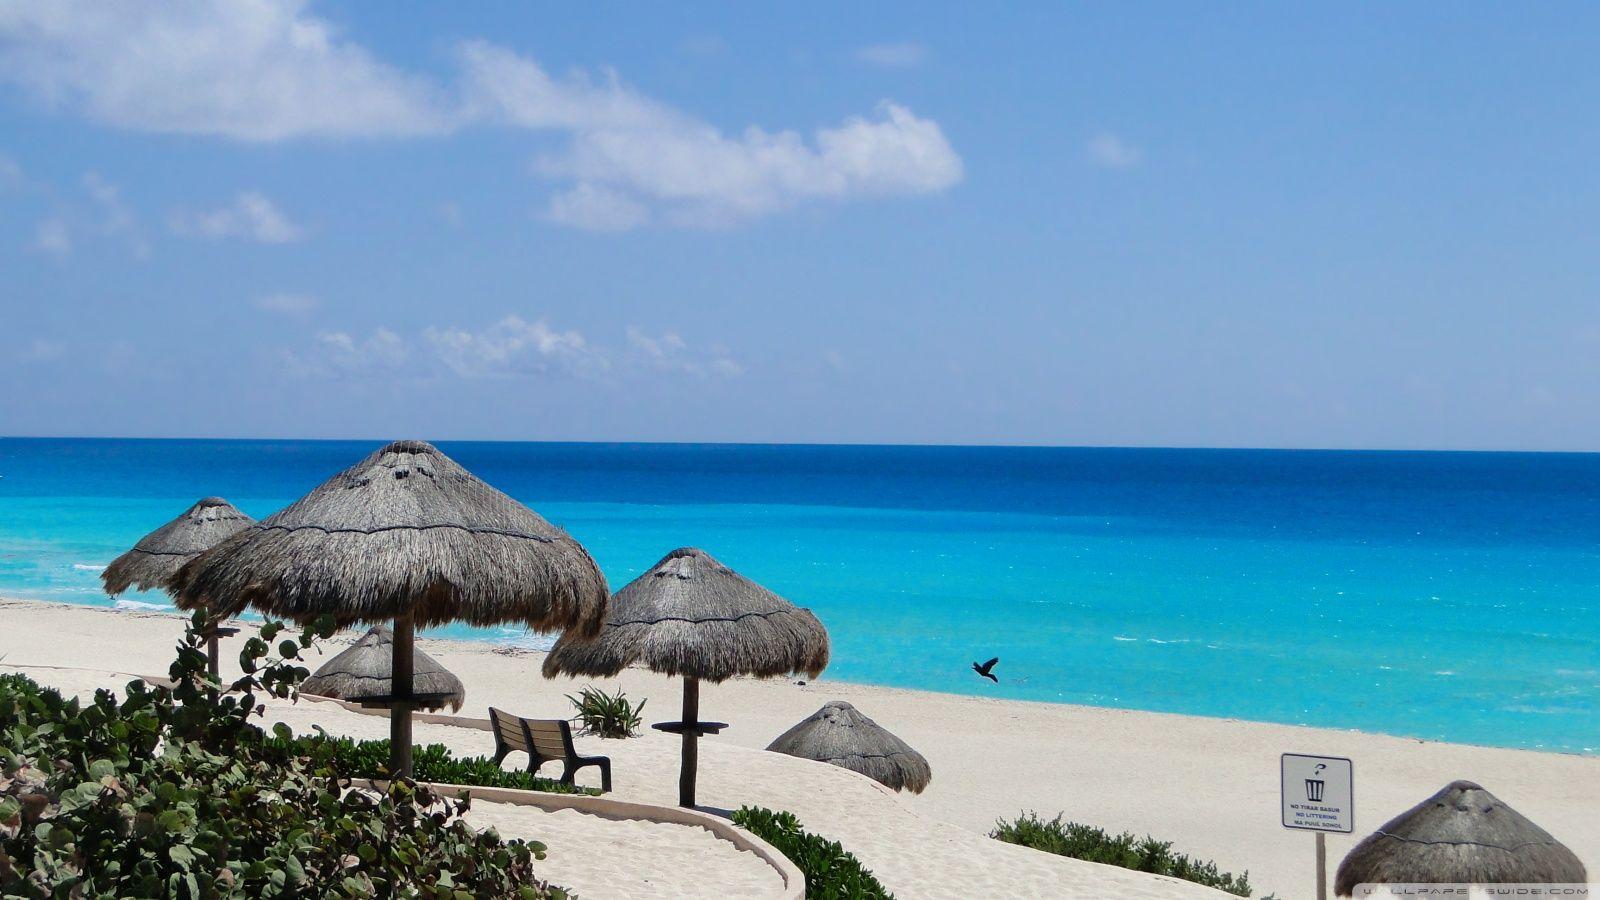 Blue Sea Cancun HD desktop wallpaper, Widescreen, High